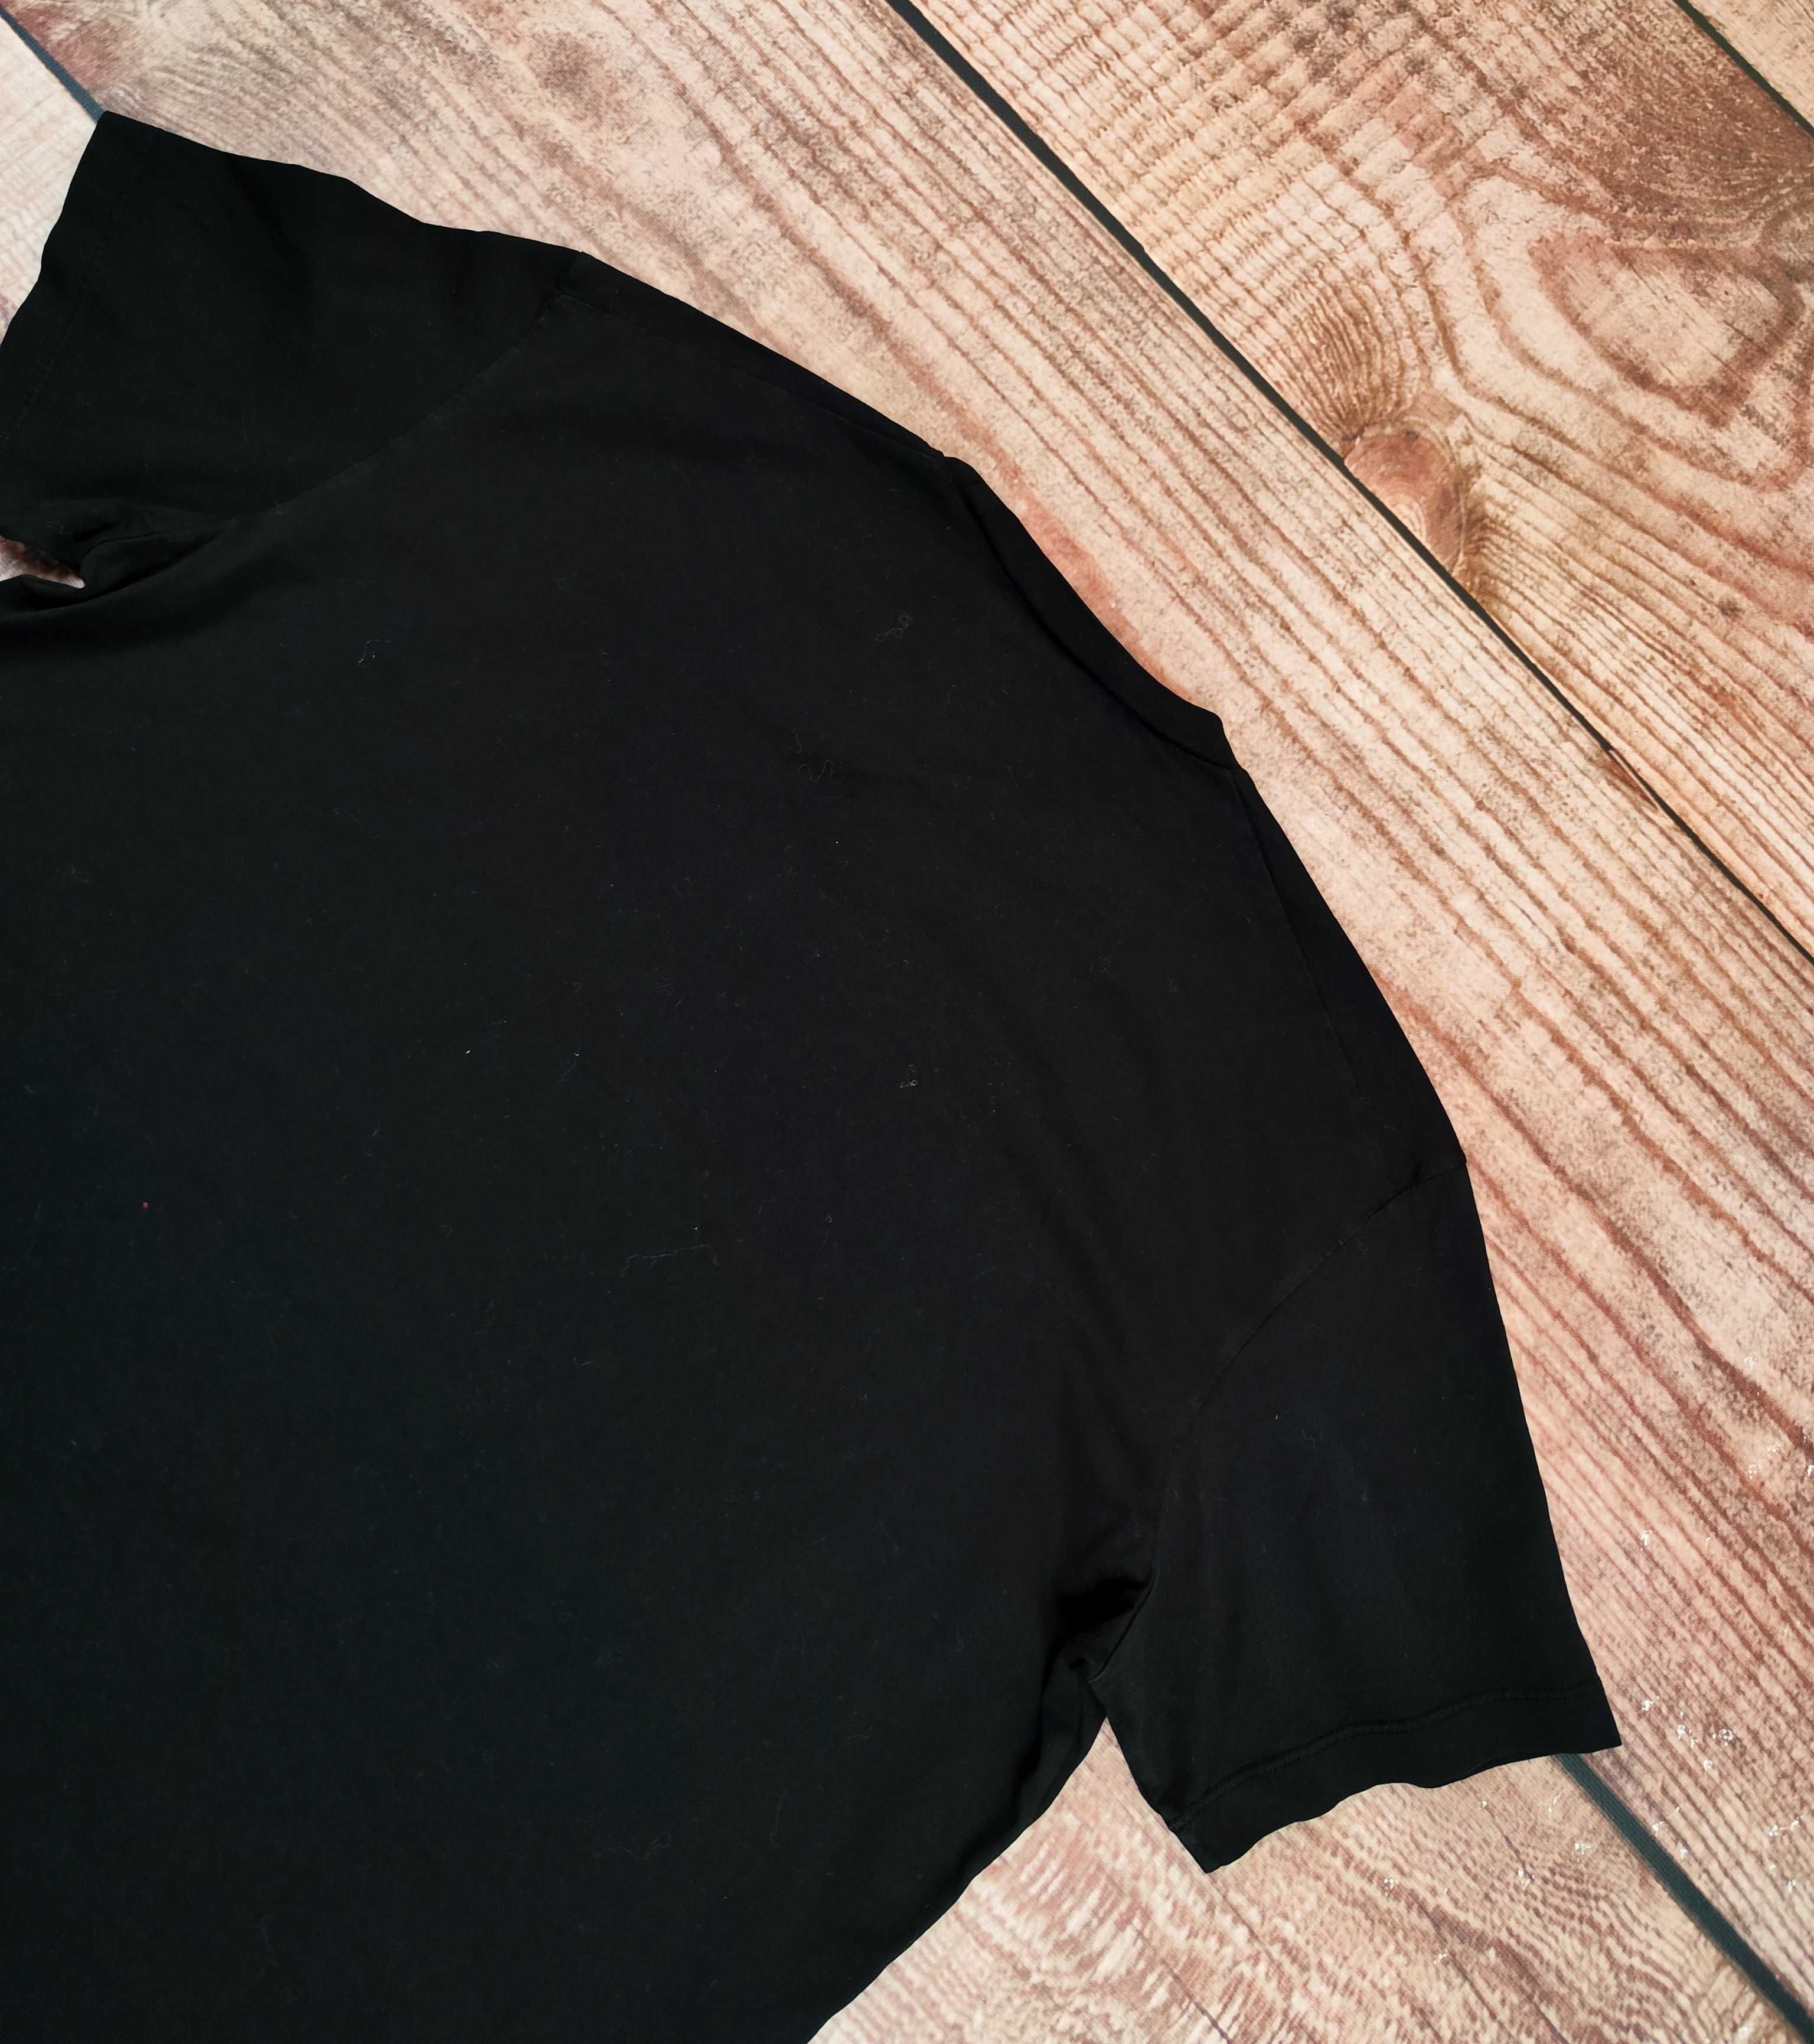 Koszulka męska Dsquared2 t-shirt męski oryginał S74GD0646 r. XL